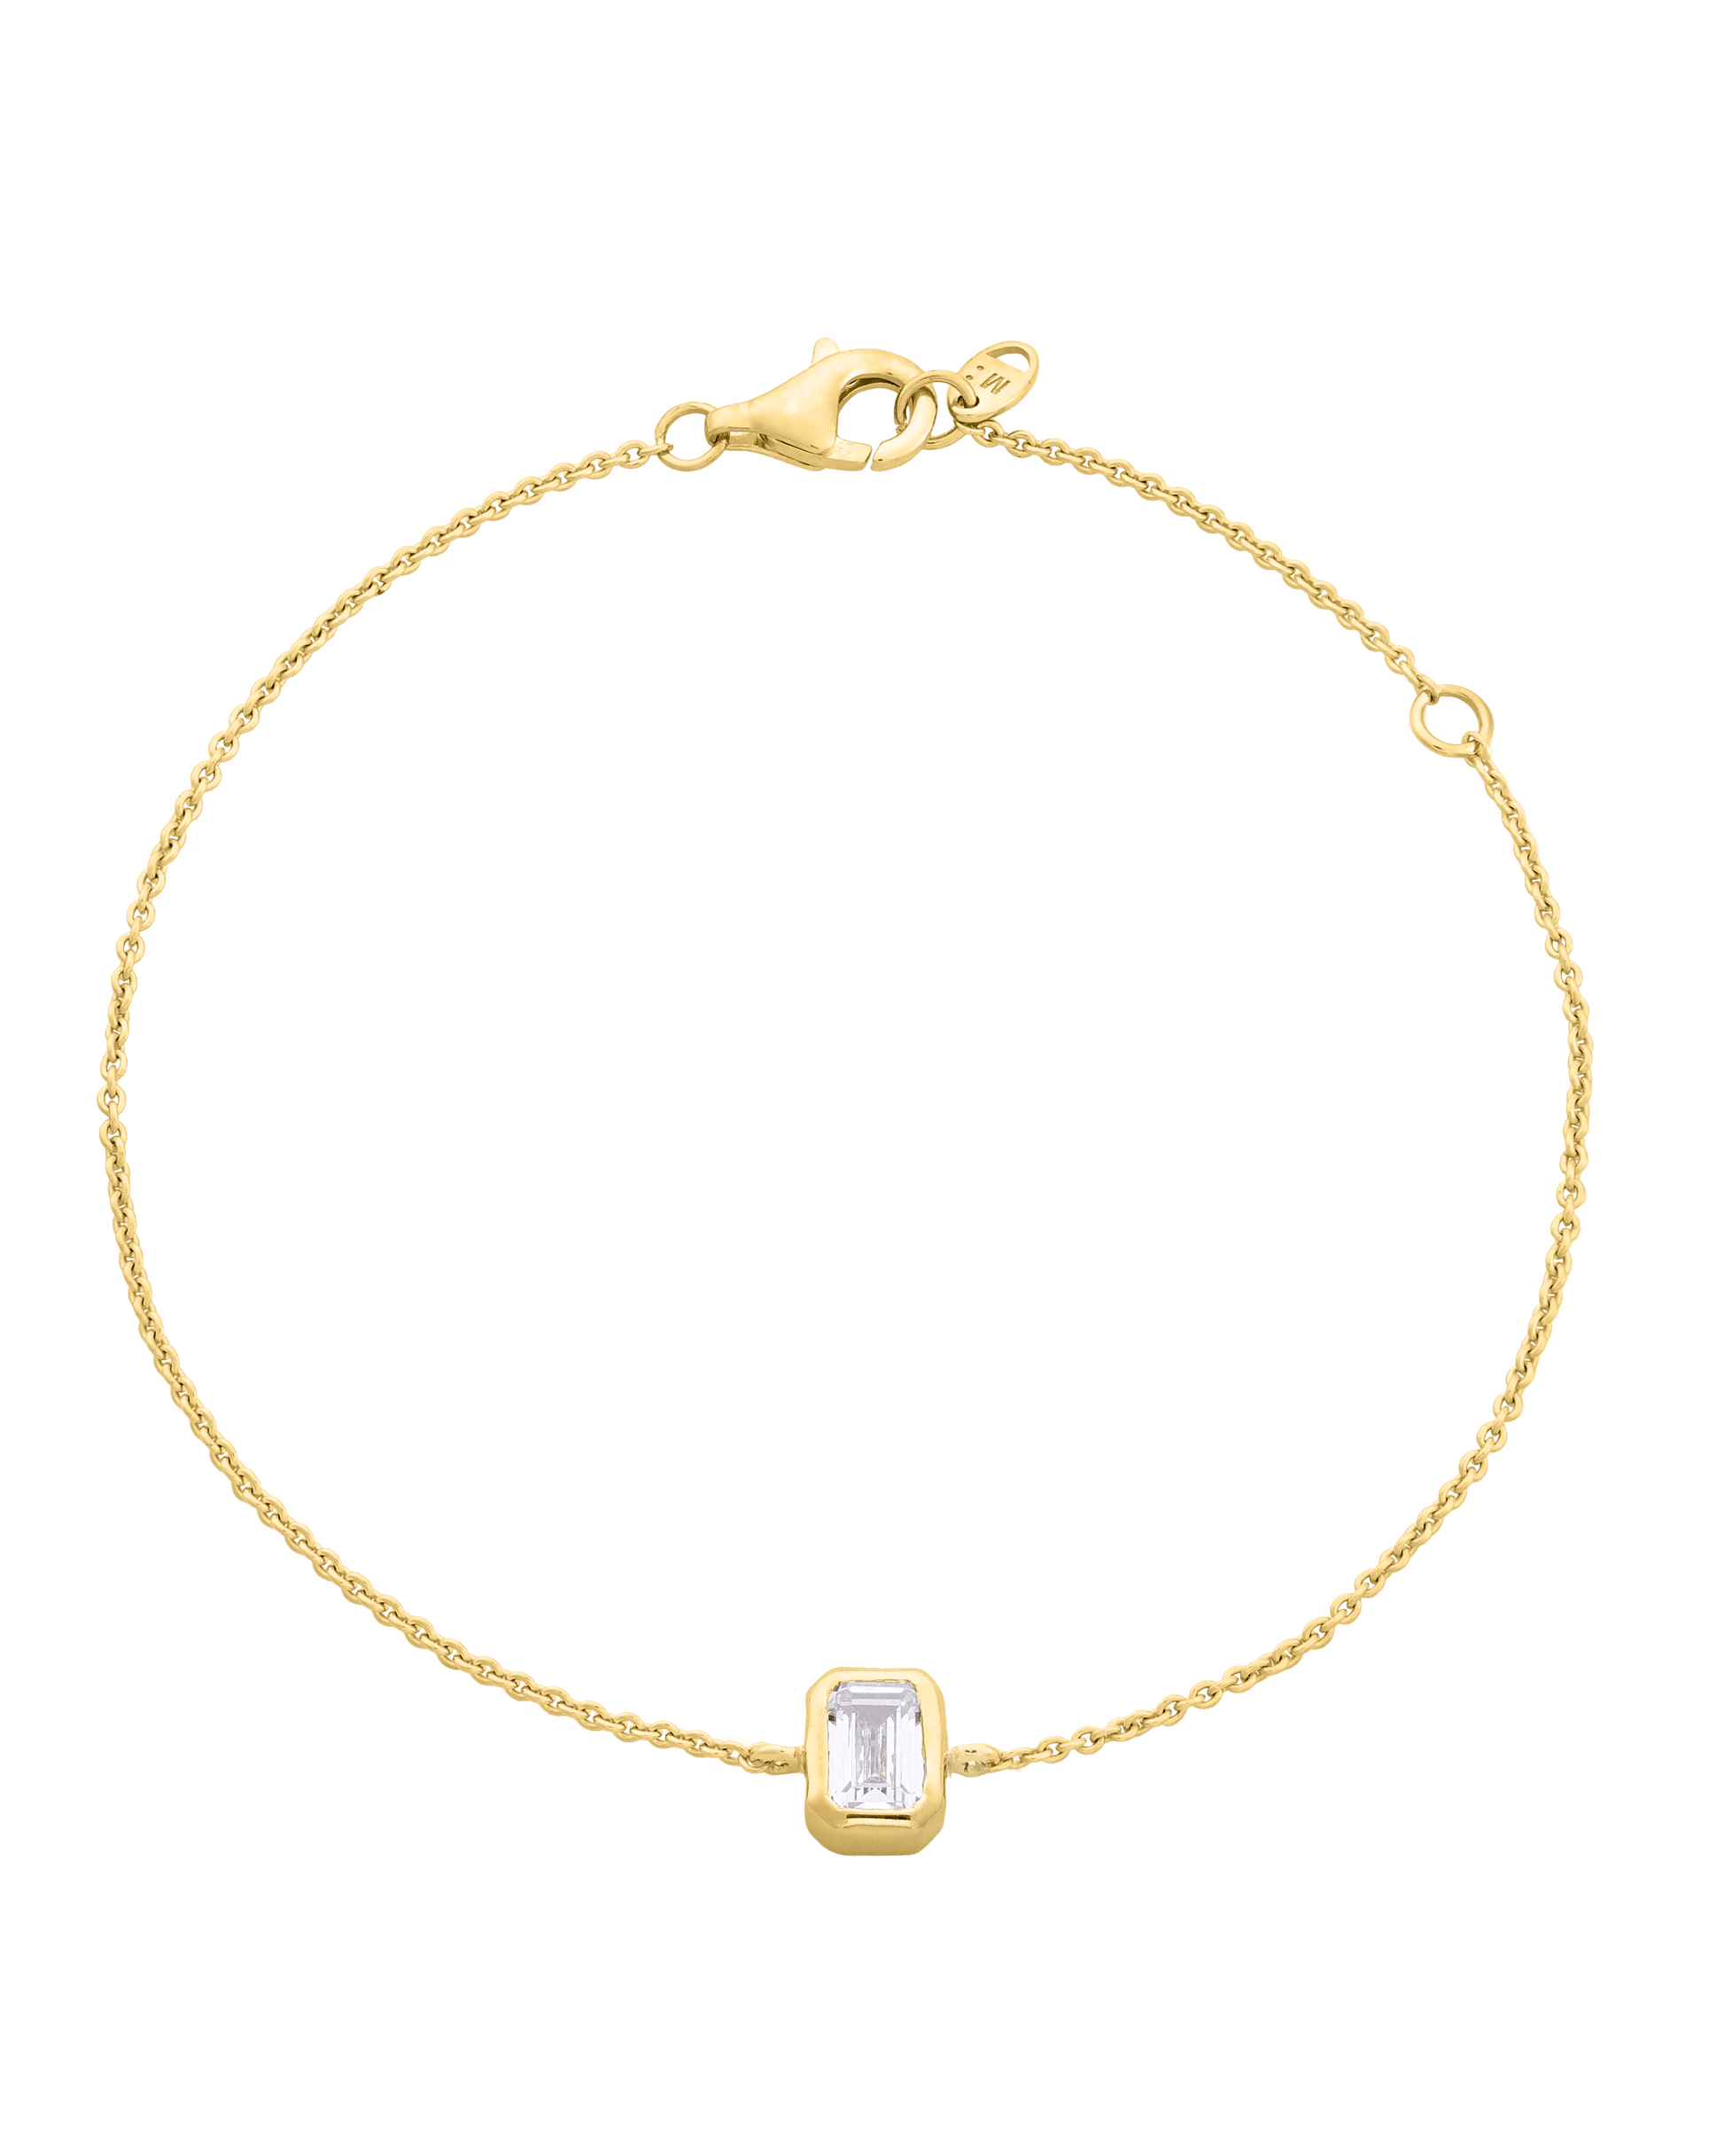 Emerald Solitaire Diamond Bracelet - 18K Gold Vermeil Bracelets magal-dev 0.10 CT 6"+1“ extender 